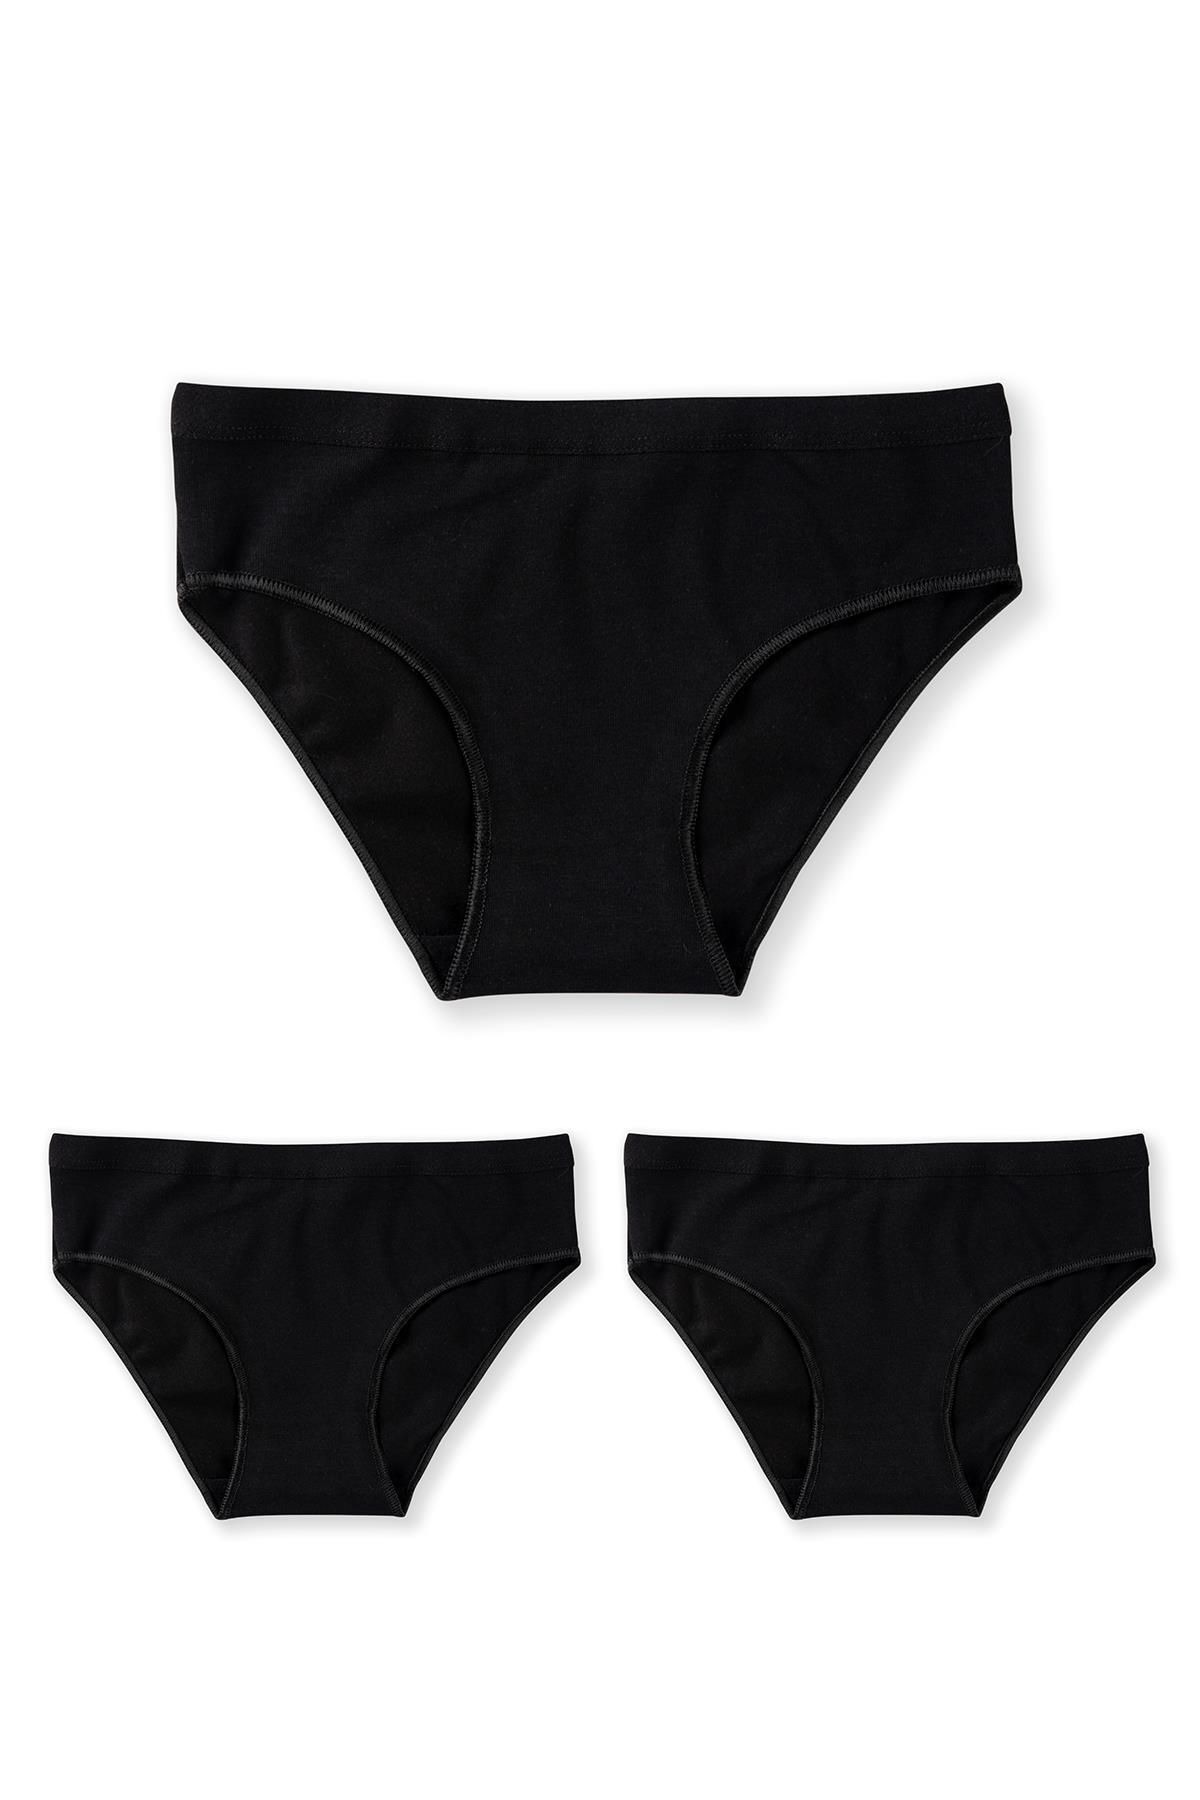 BAYKAR Kız Çocuk Pamuklu Bikini Kesim Düz Basic Külot 3'lü Paket 5005 Siyah 5005-3